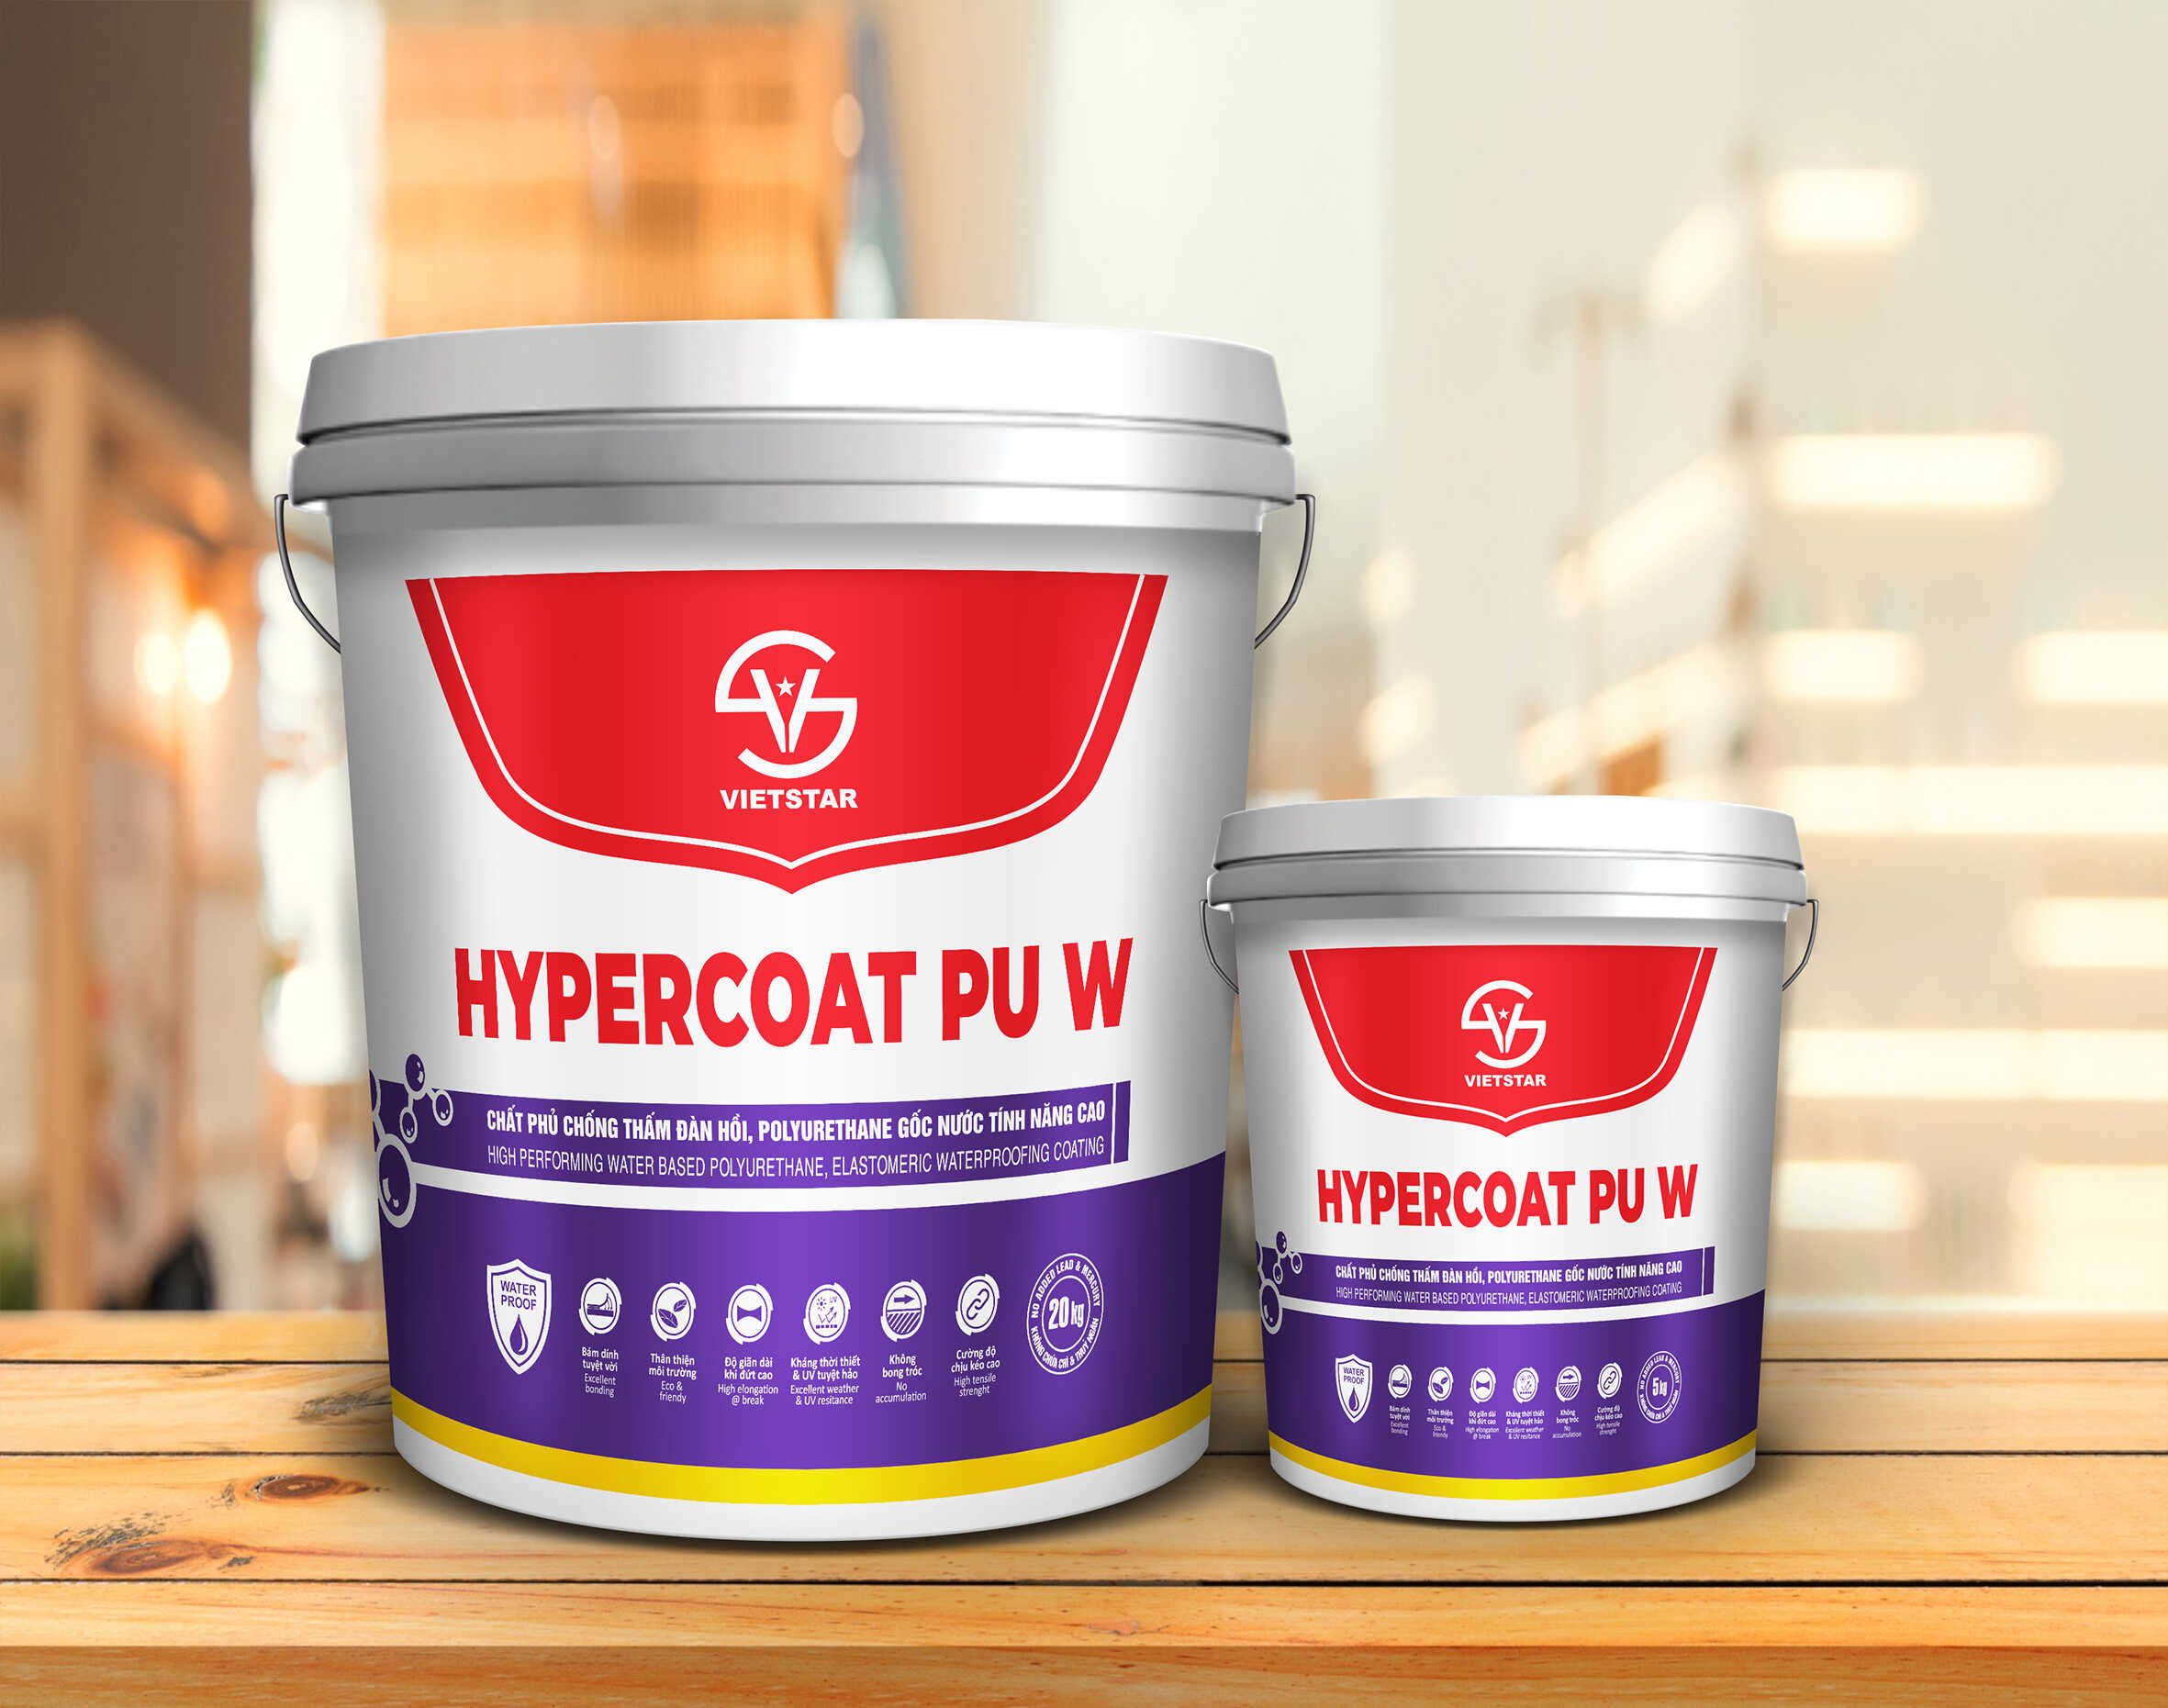 Hypercoat PU W sơn chống thấm polyurethane gốc nước